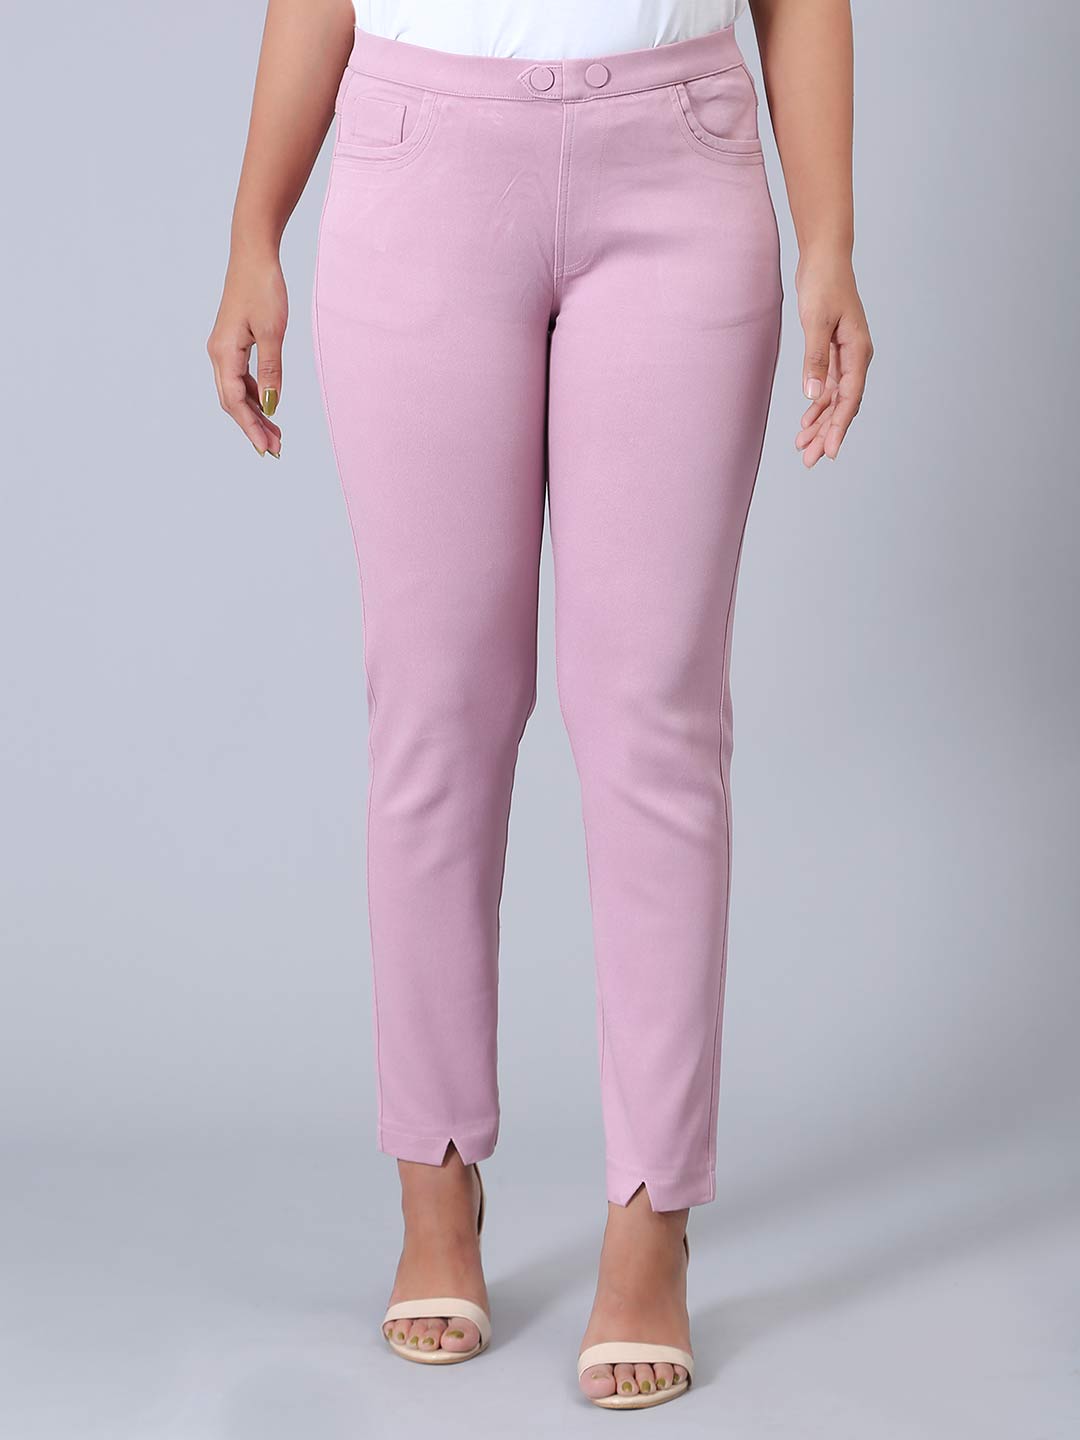 Cotton casual wear pink jeggings - G3-WJJ0342